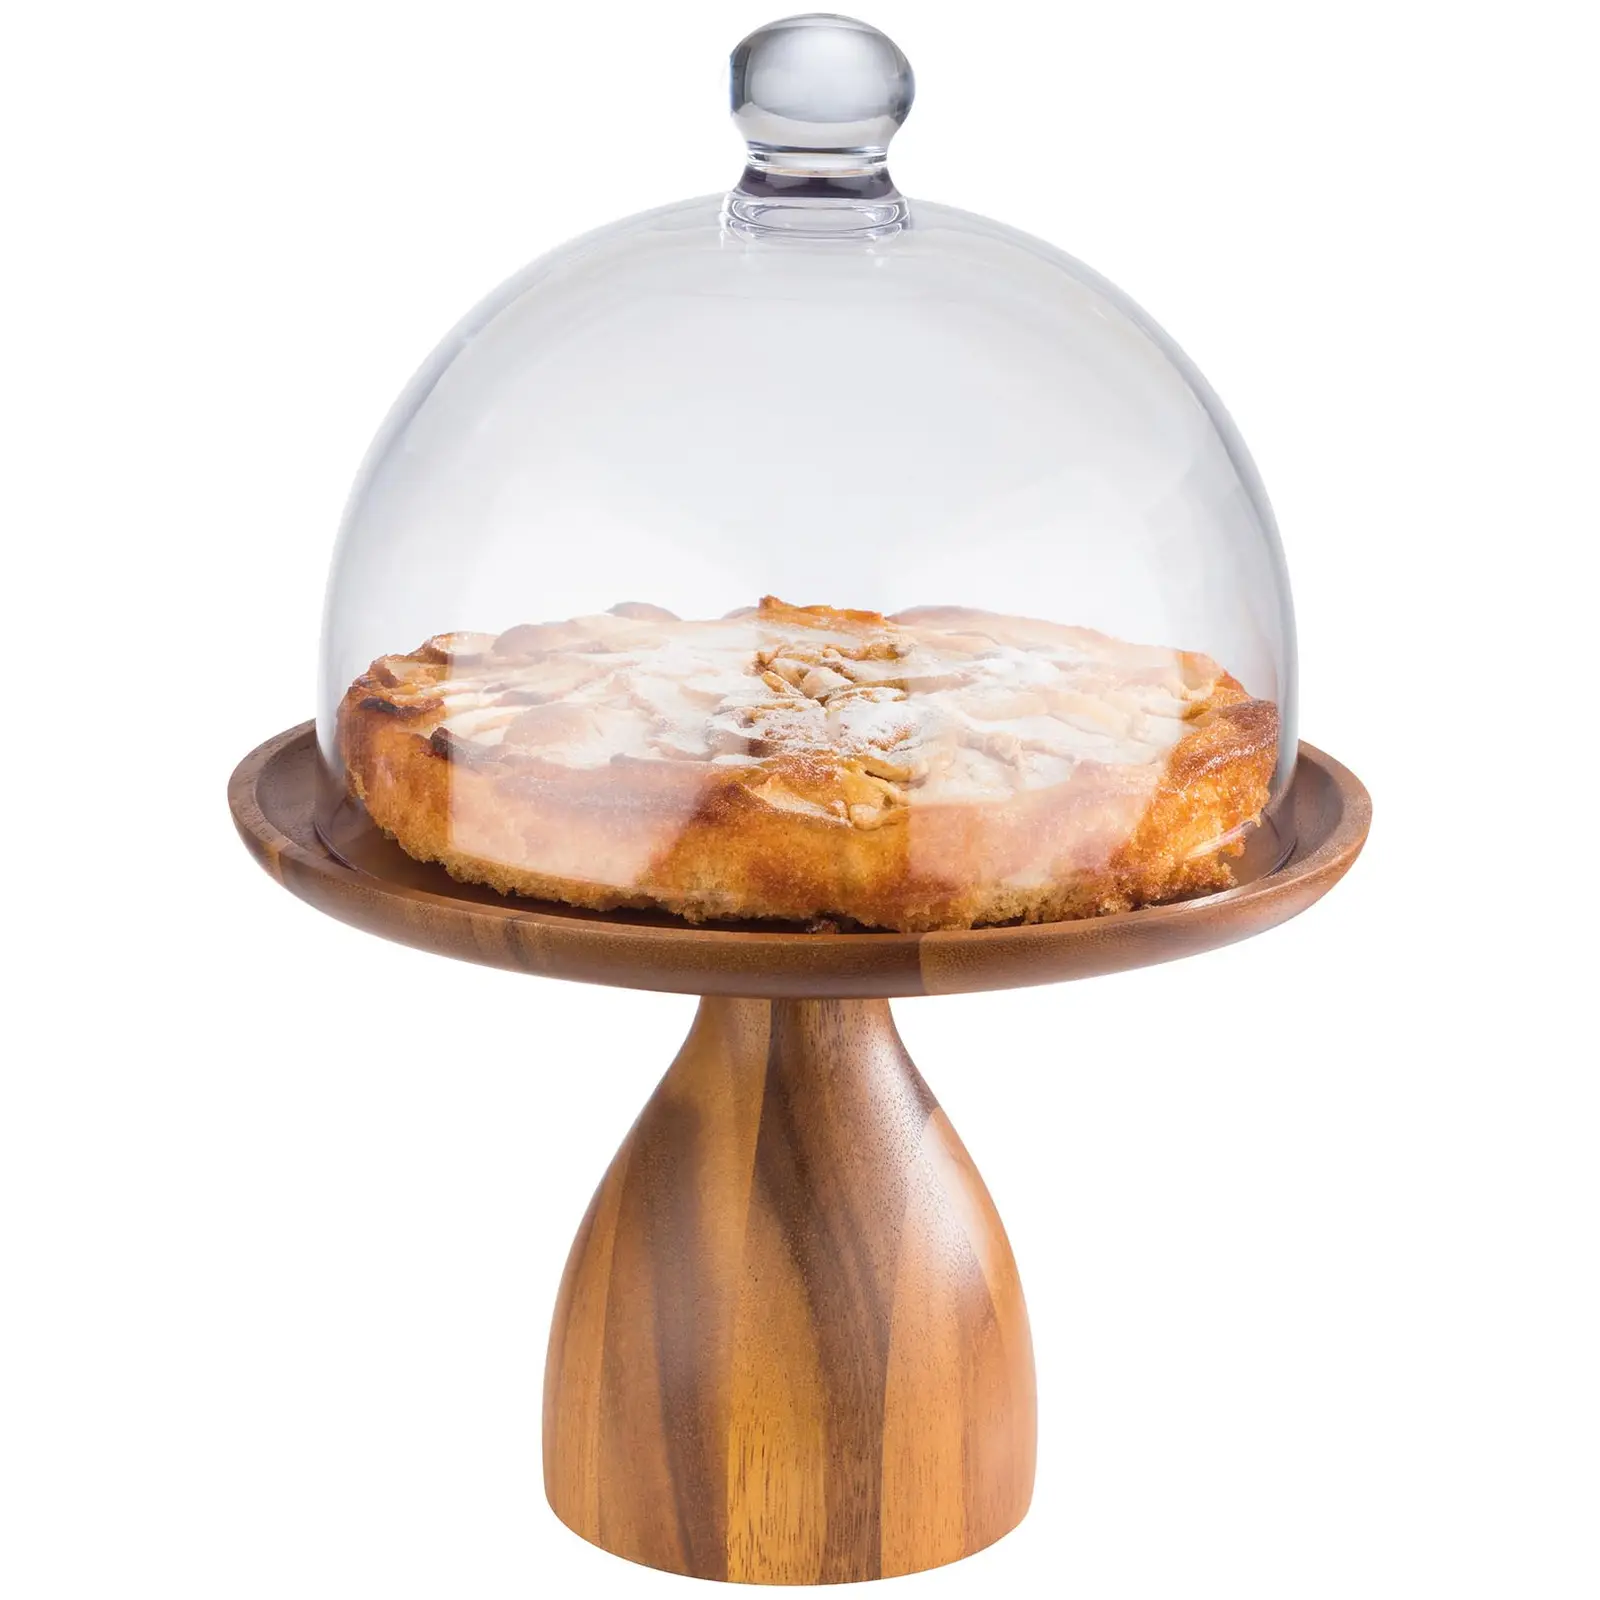 Stojan na koláče a dorty - Akáciové dřevo, olejované - průměr: 38,5 cm - výška: 8 cm